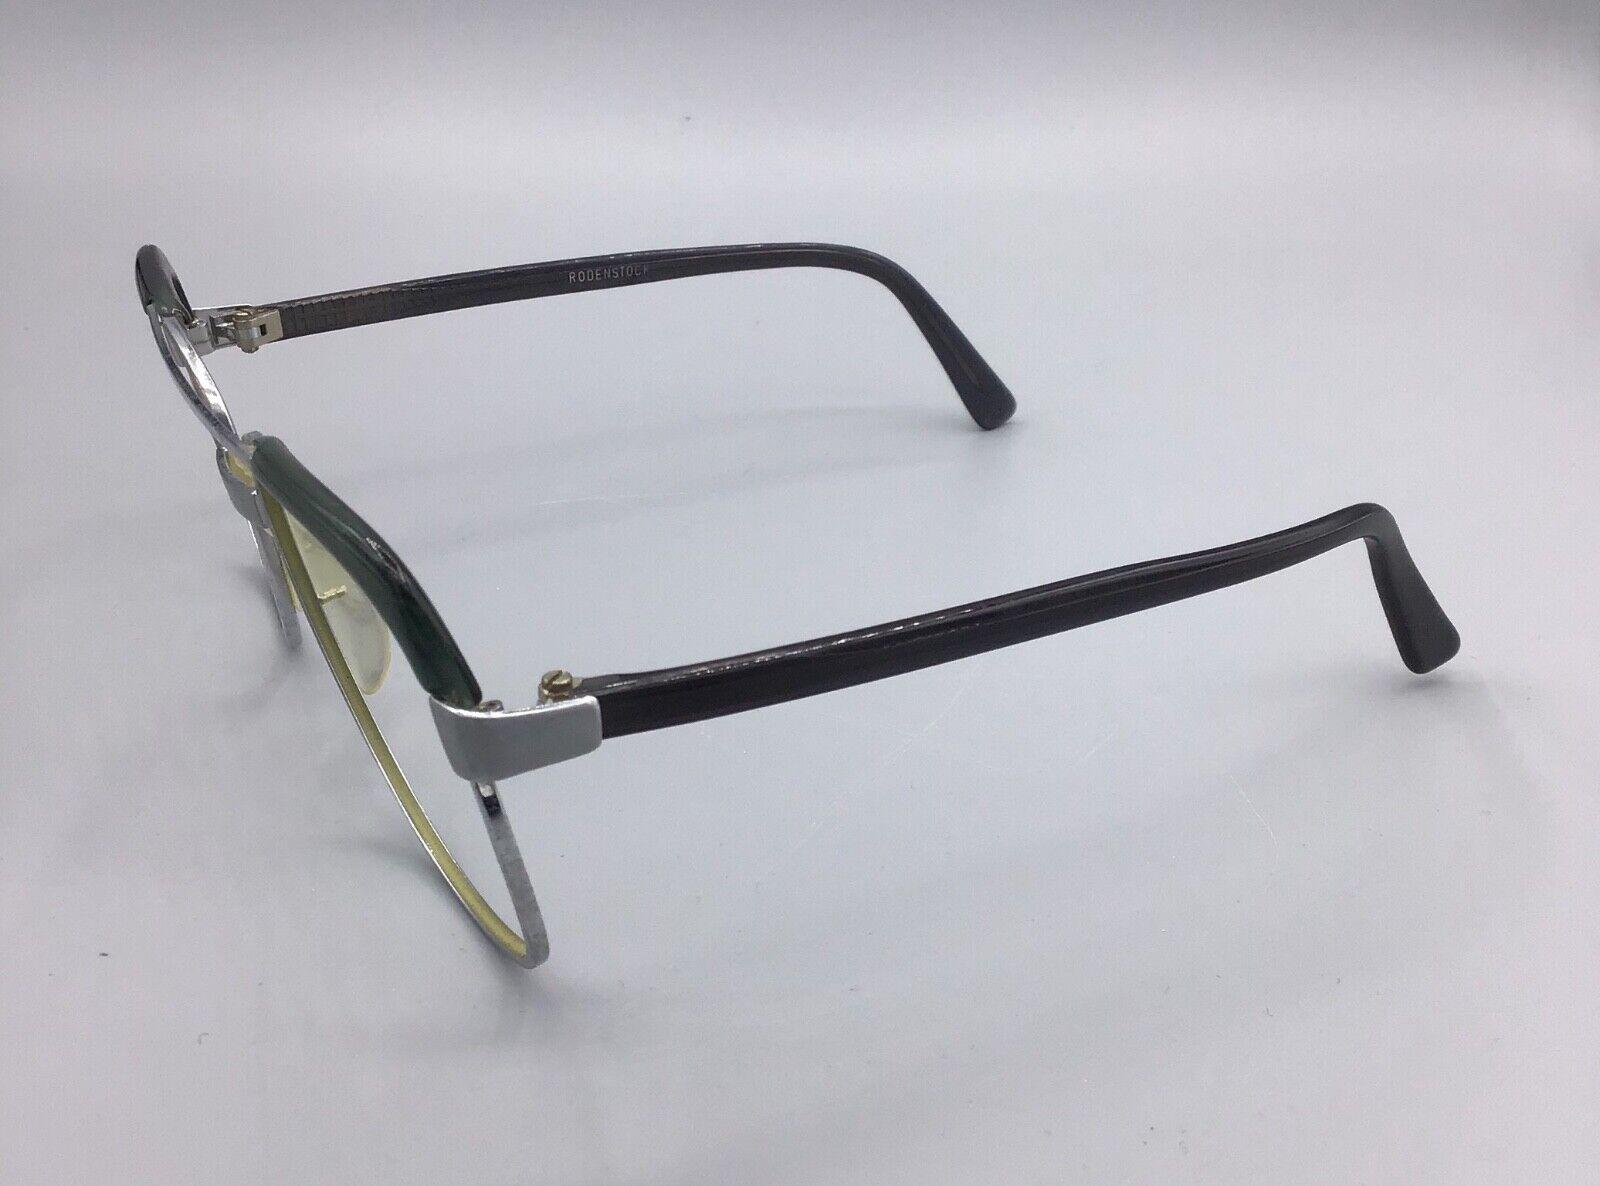 Rodenstock occhiale vintage Eyewear frame brillen lunettes Martin WM titan